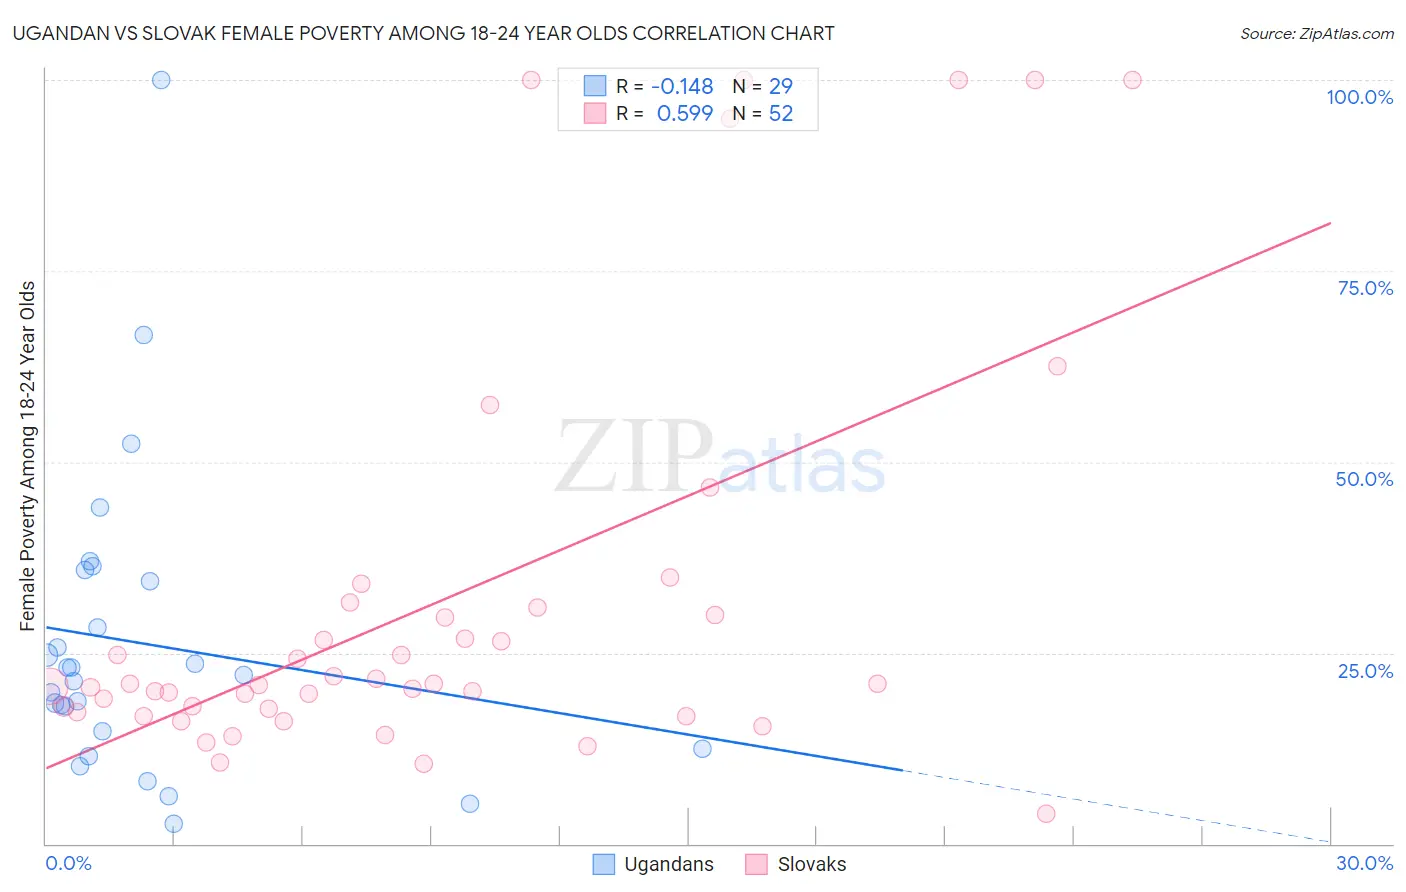 Ugandan vs Slovak Female Poverty Among 18-24 Year Olds